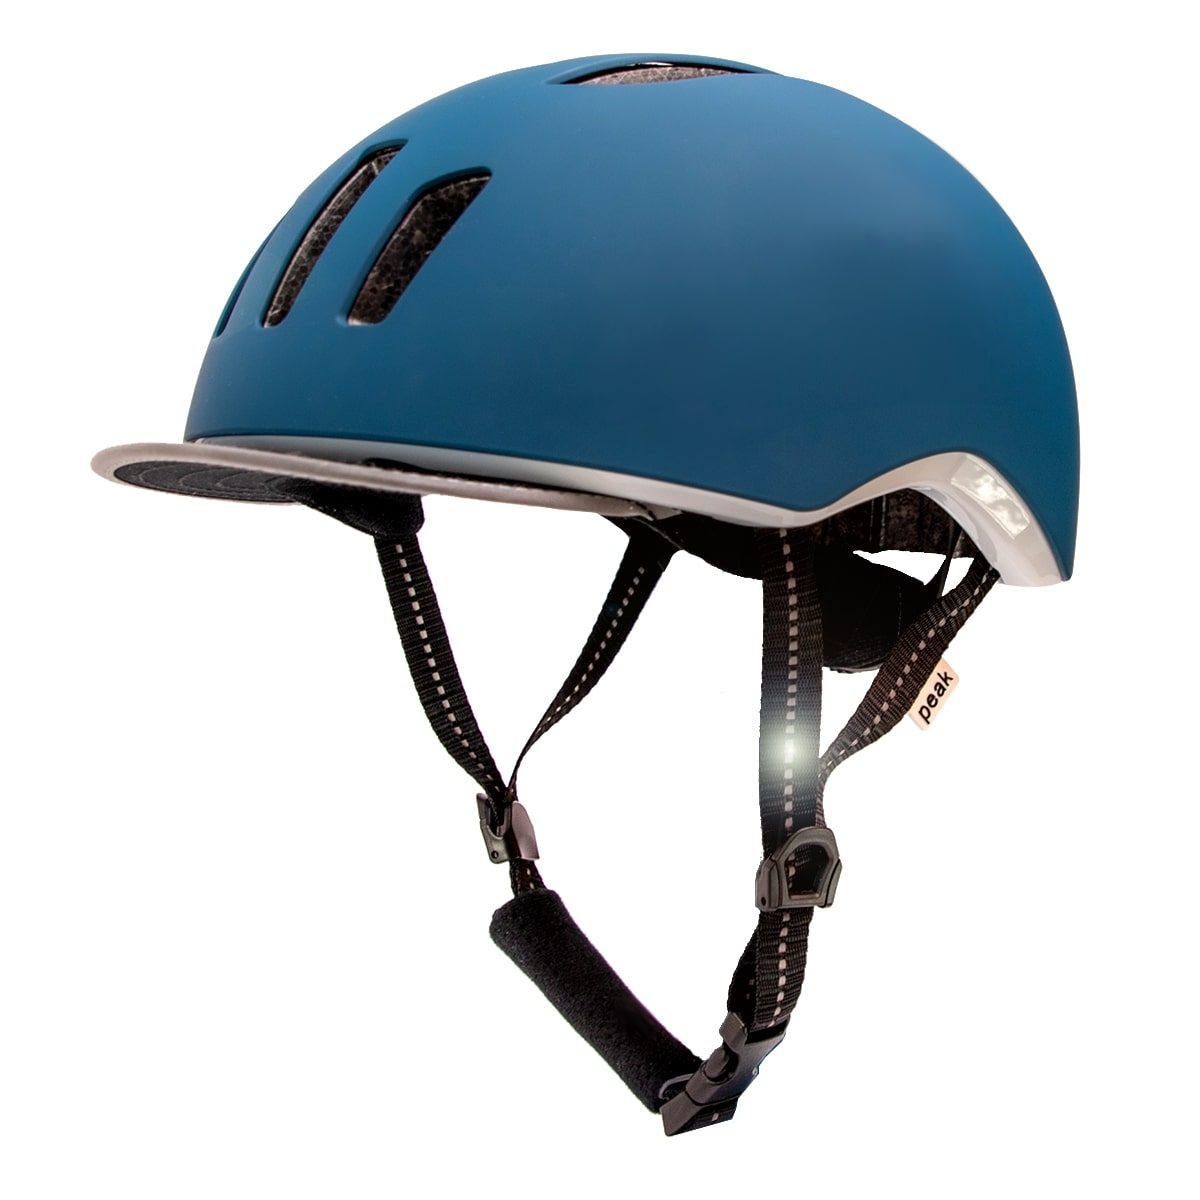 Billede af Crazy Safety Blå/Petrolium cykelhjelm til mænd og kvinder. Aftagelig skygge, refleksstropper og LED lys. M/L 53-59cm. Testet, godkendt og certificeret